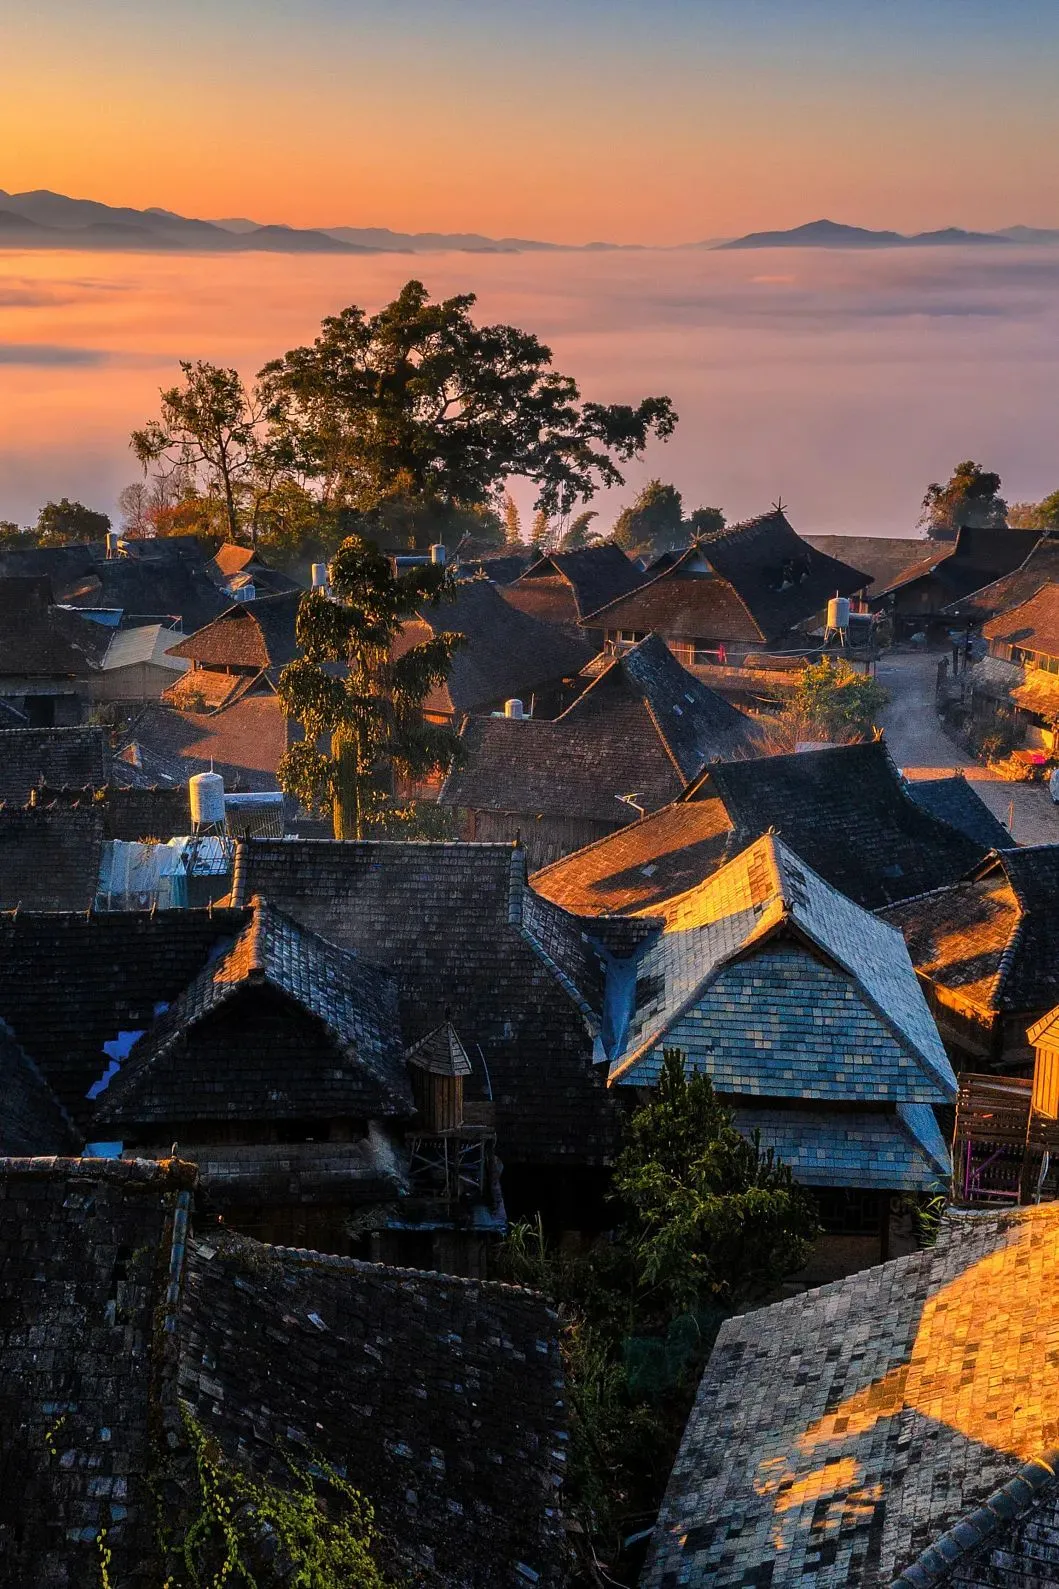 远处的云海与静谧的村寨，构成一幅层次分明的图景 图/视觉中国